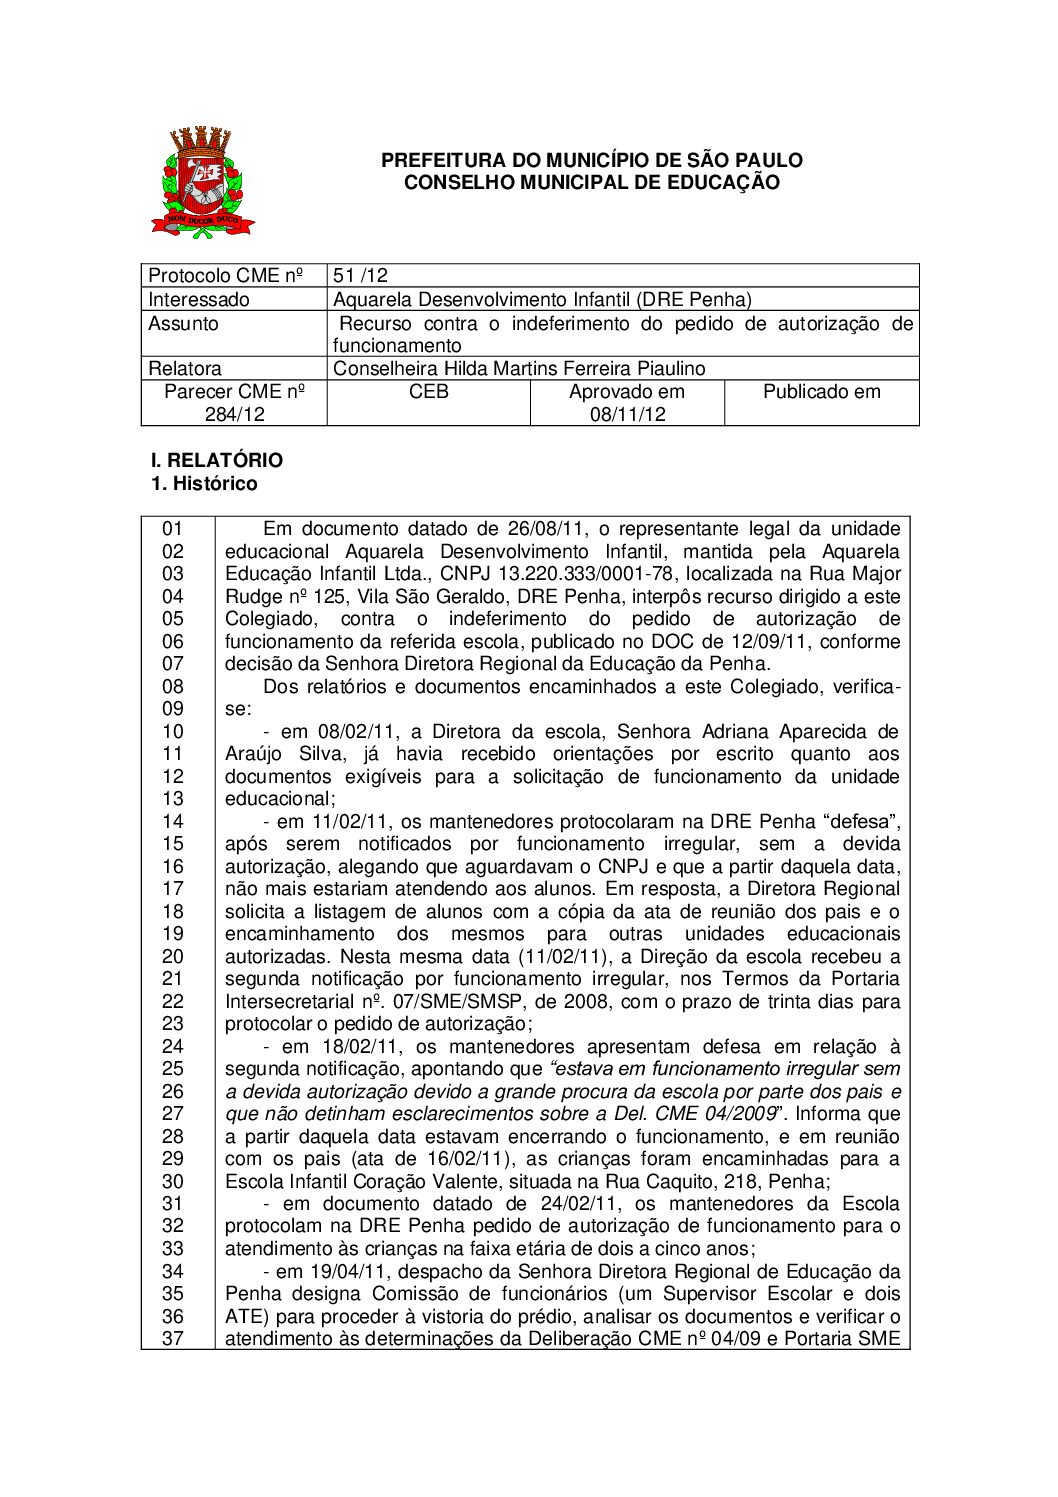 Parecer CME nº 284/2012 -   Aquarela Desenvolvimento Infantil (DRE Penha) - Recurso contra o indeferimento do pedido de autorização de funcionamento 